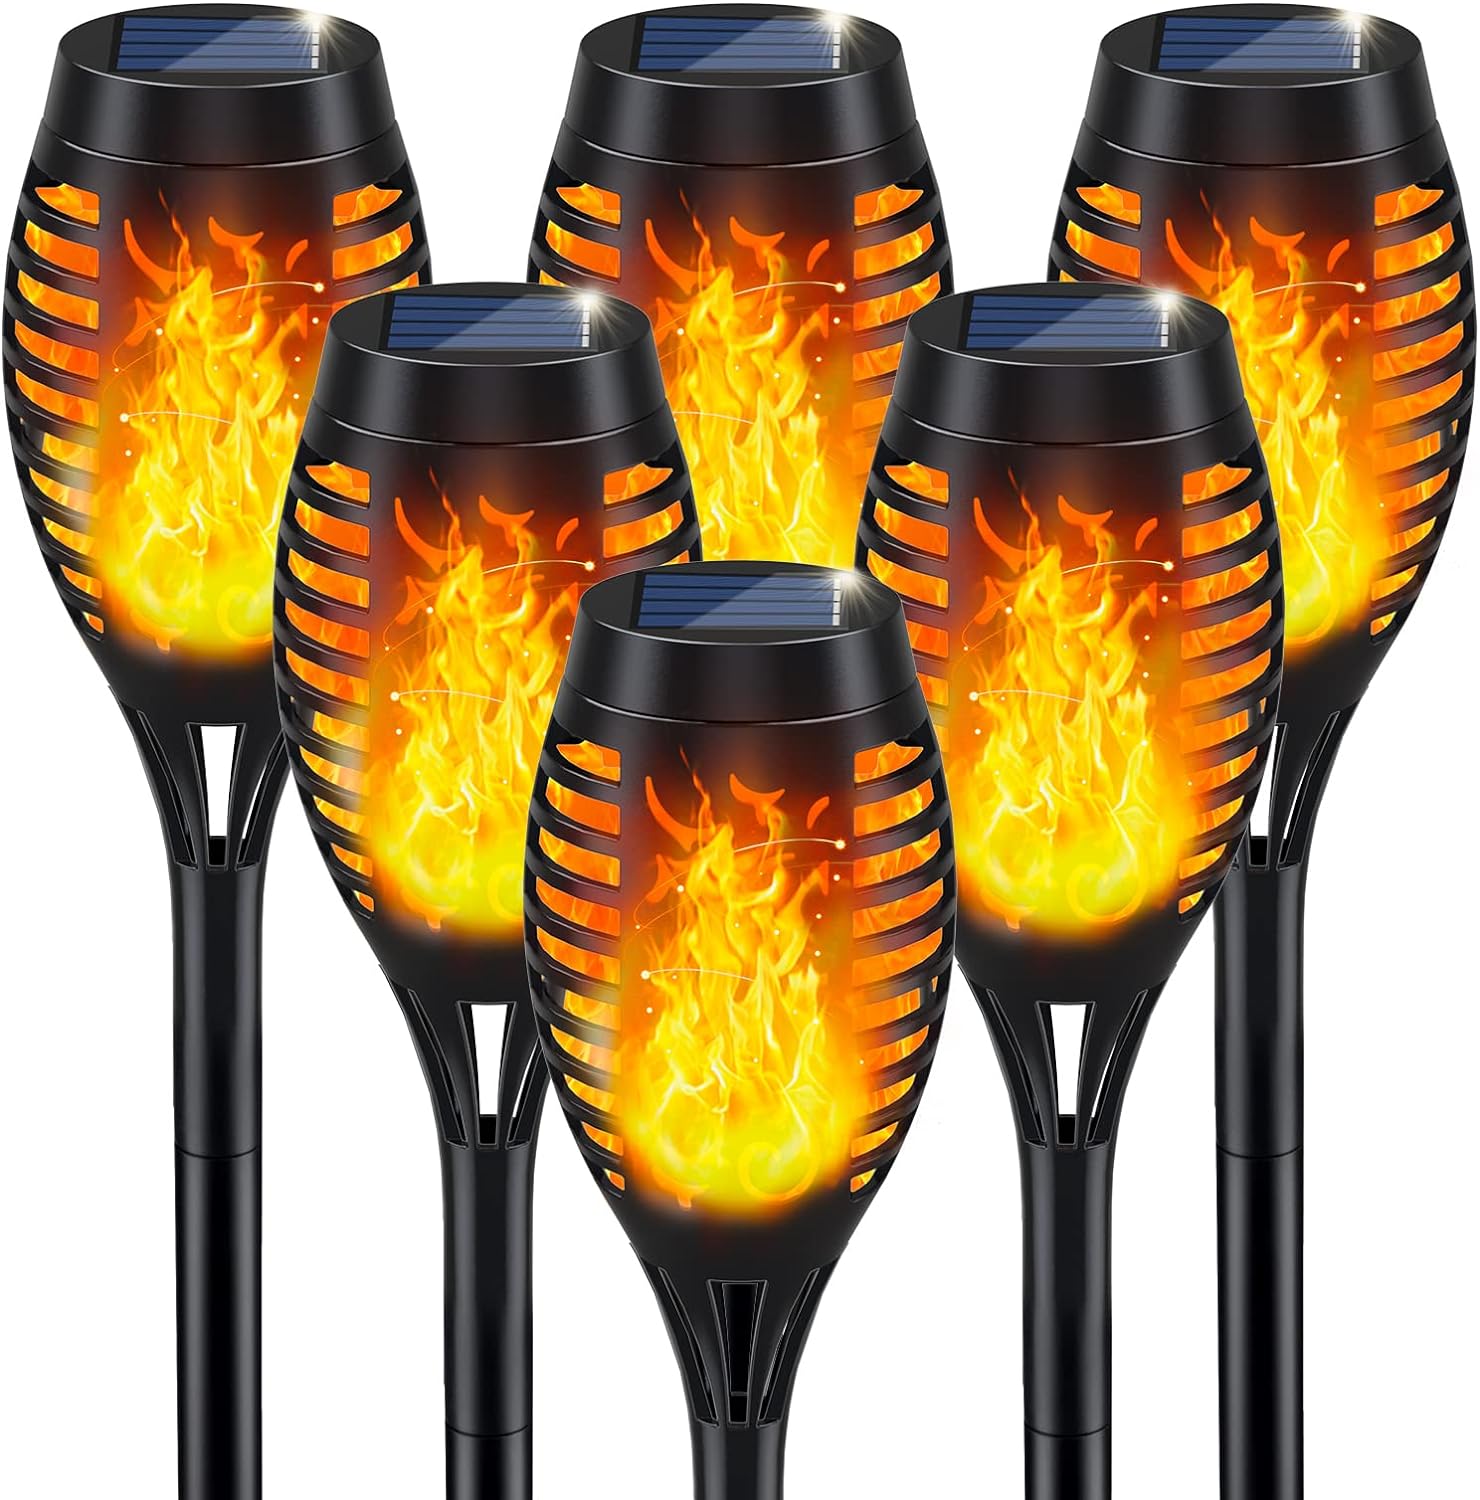 IkeeRuic Solar Outdoor Lights, Solar Tiki Torces with Flickering Flame, Halloween Decorations Solar Garden Lights, Waterproof Solar Powe